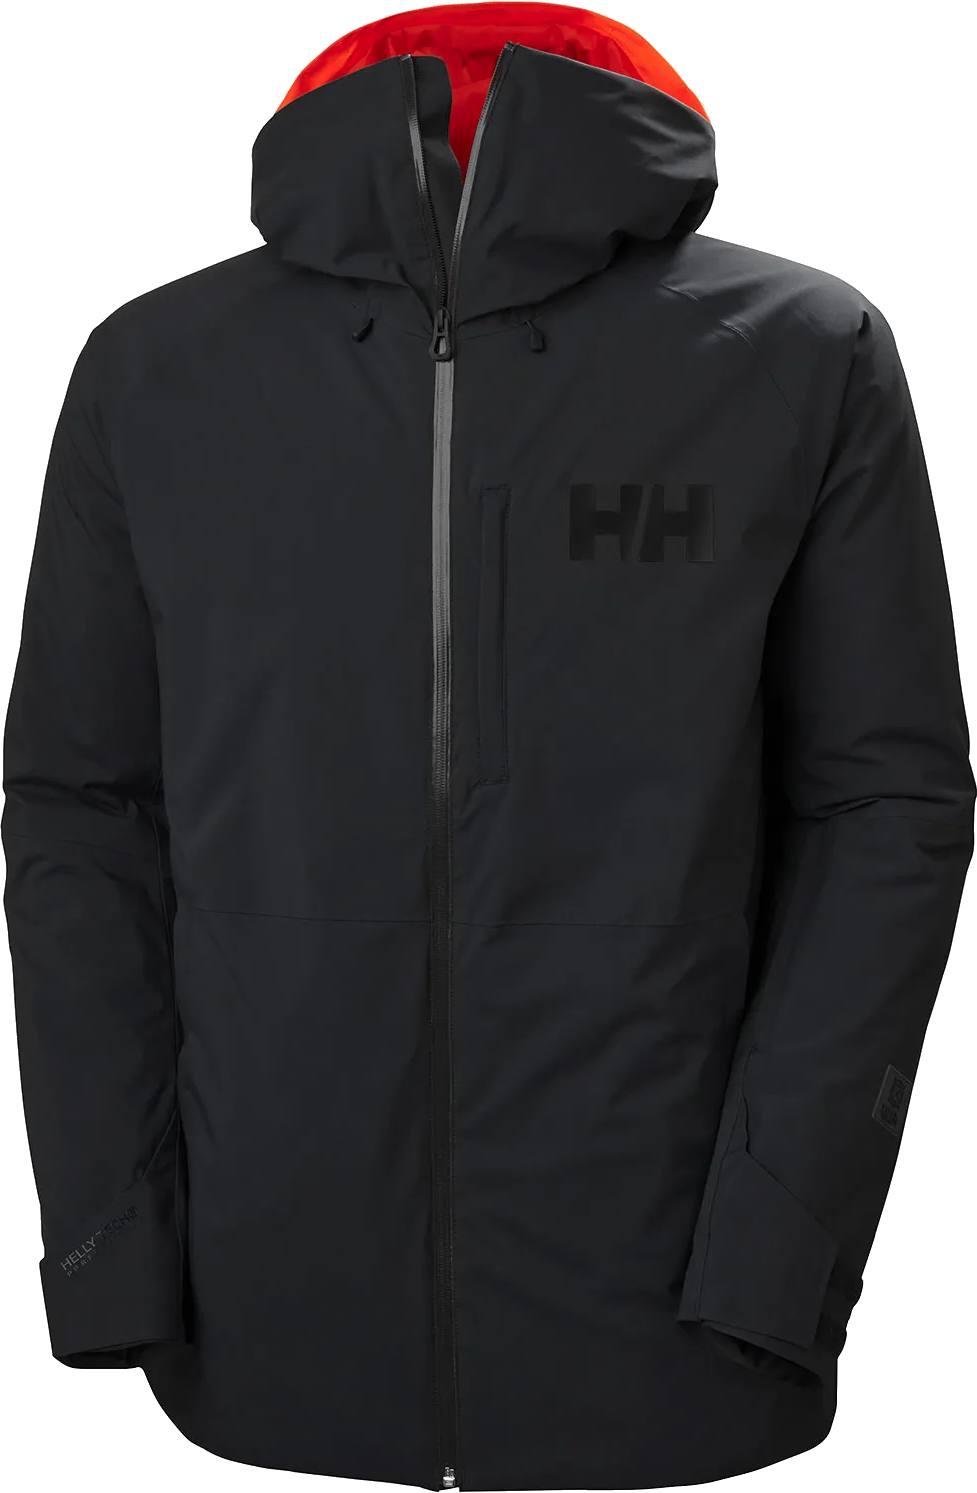 Helly Hansen Men’s Powderface Jacket